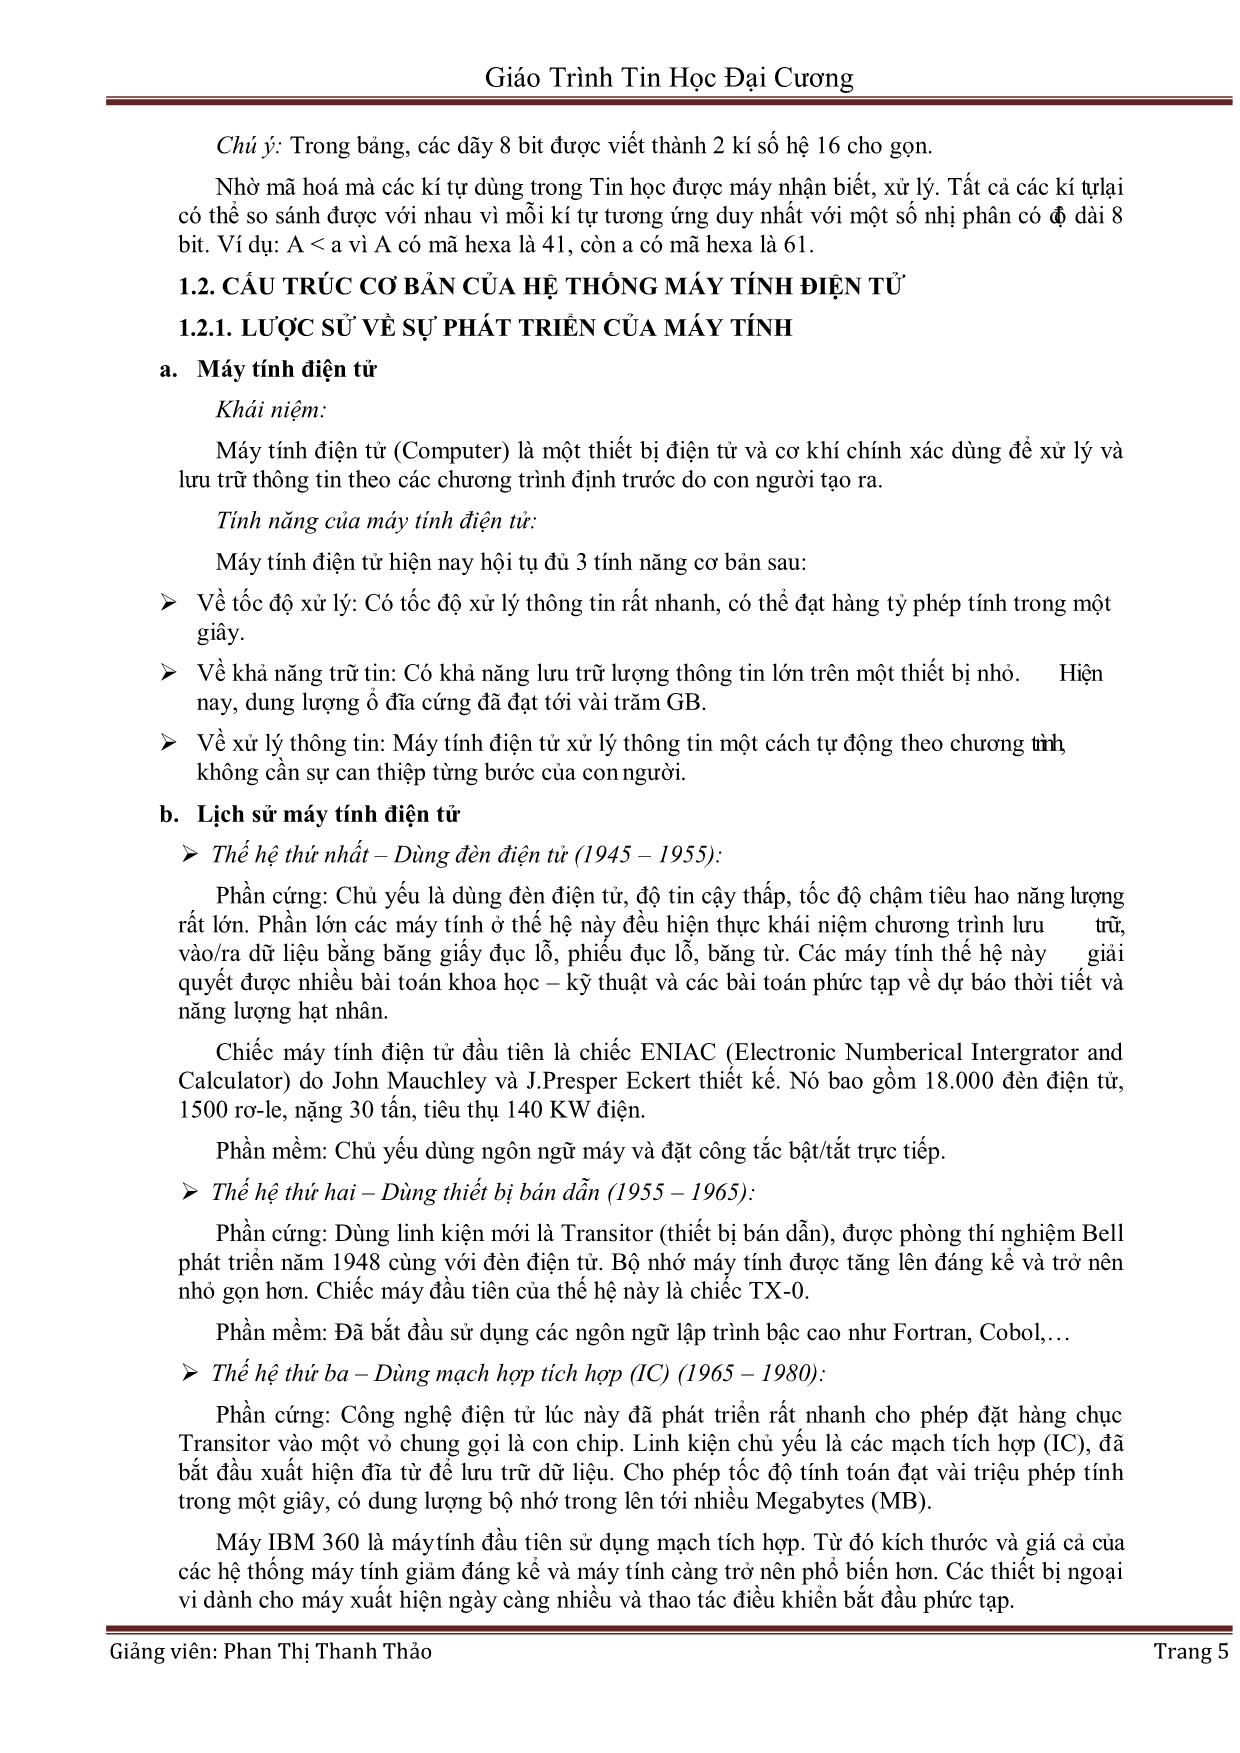 Giáo trình môn Tin học đại cương (Bản hay) trang 5